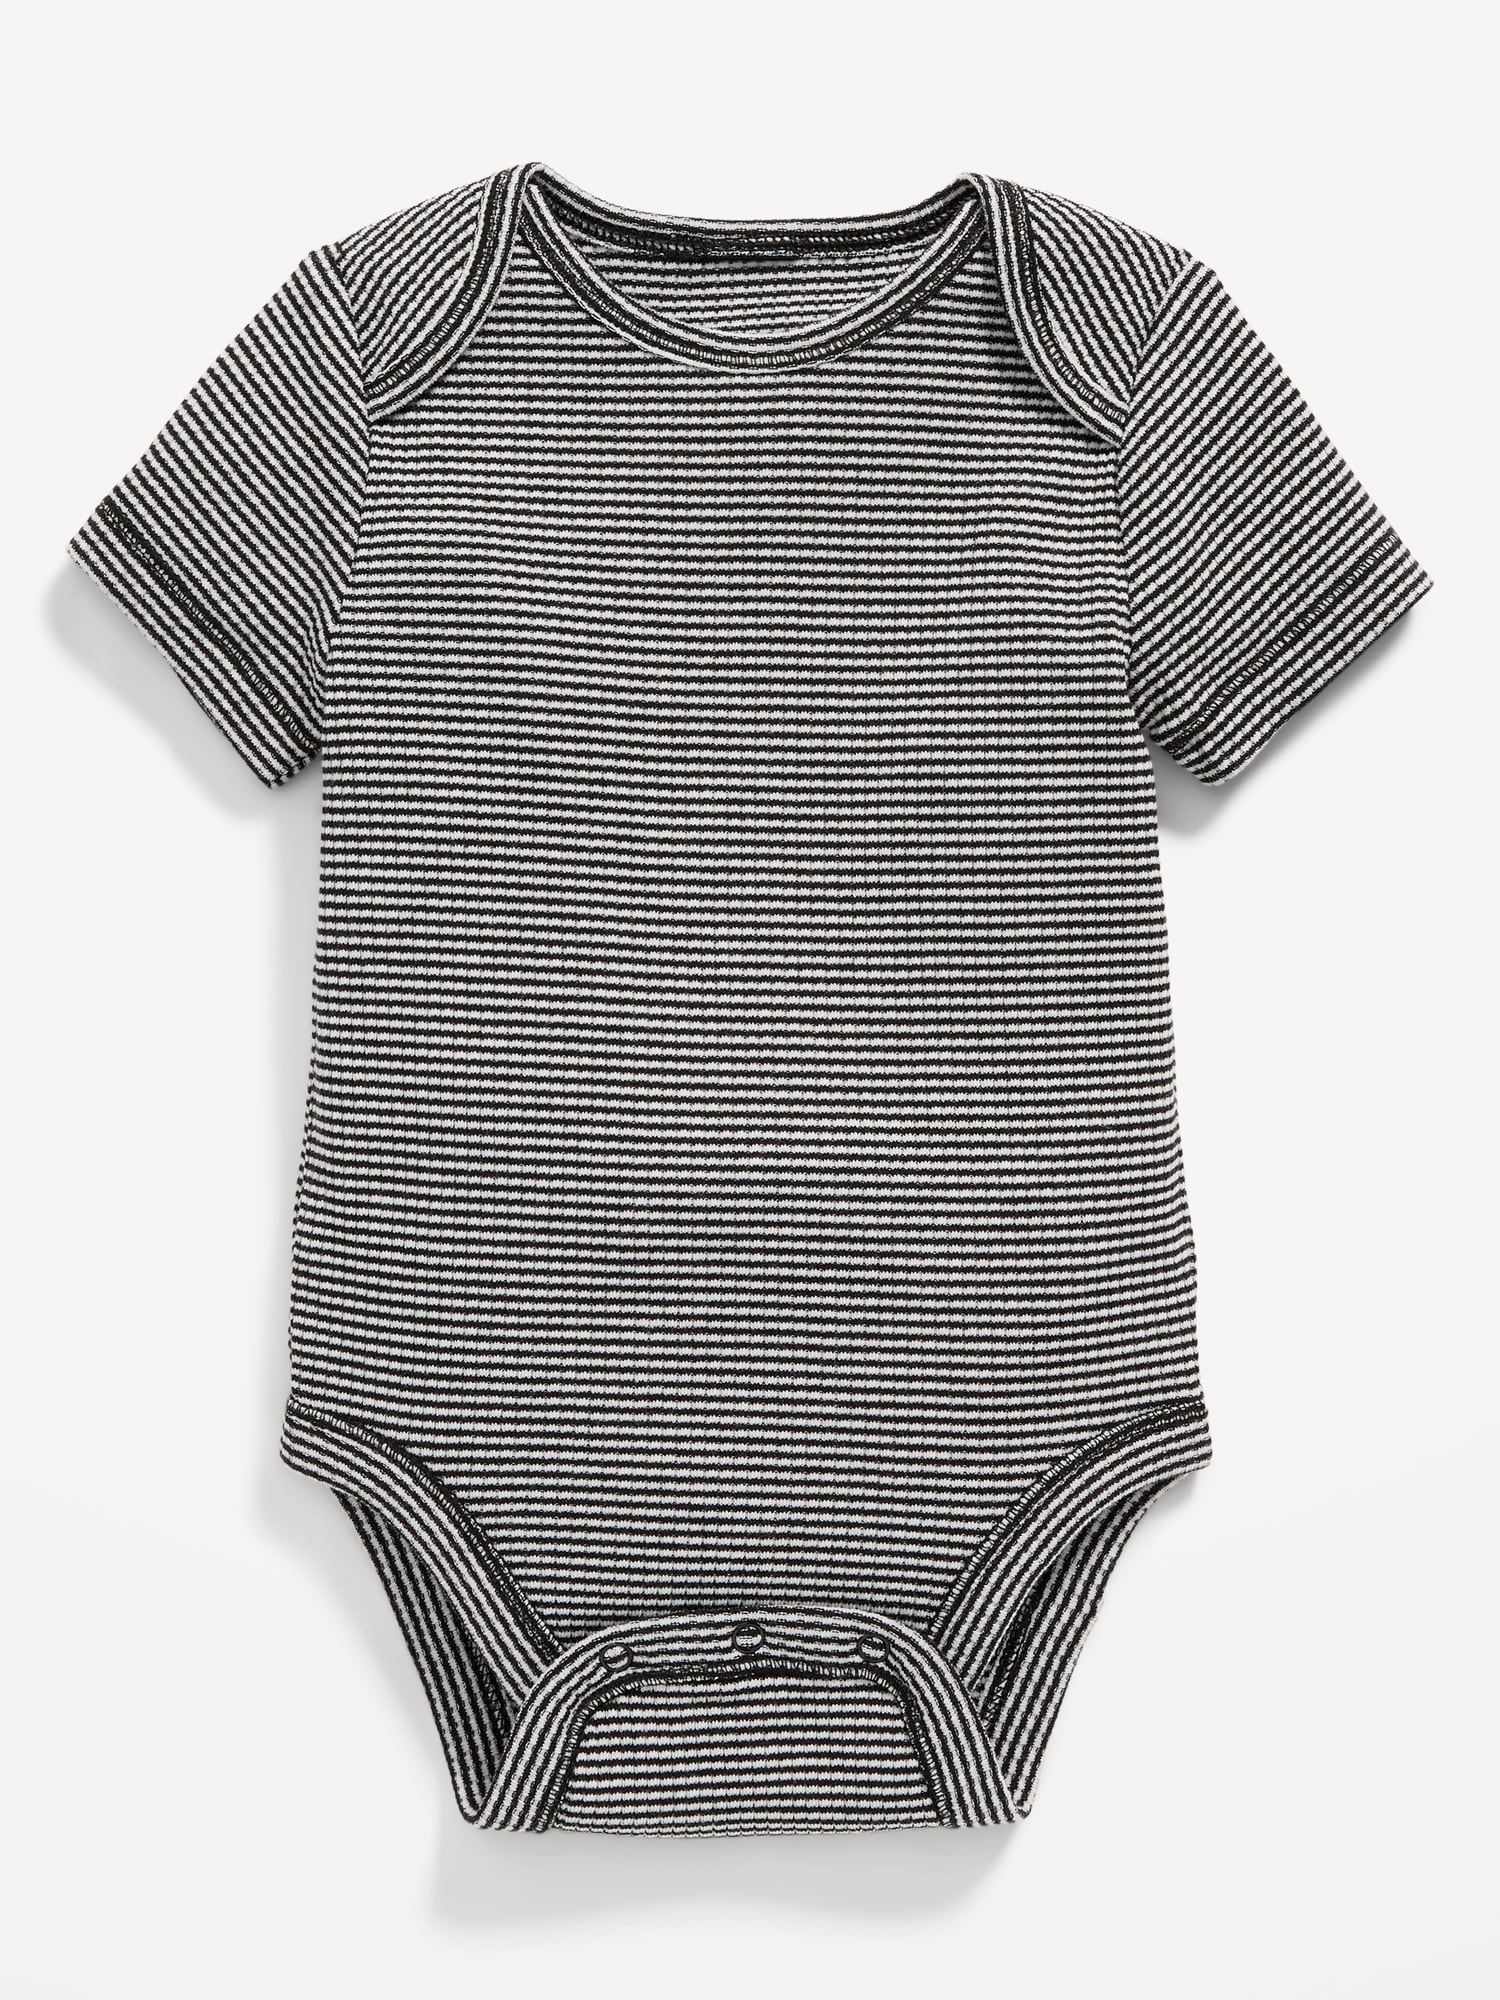 Unisex Short-Sleeve Bodysuit for Baby